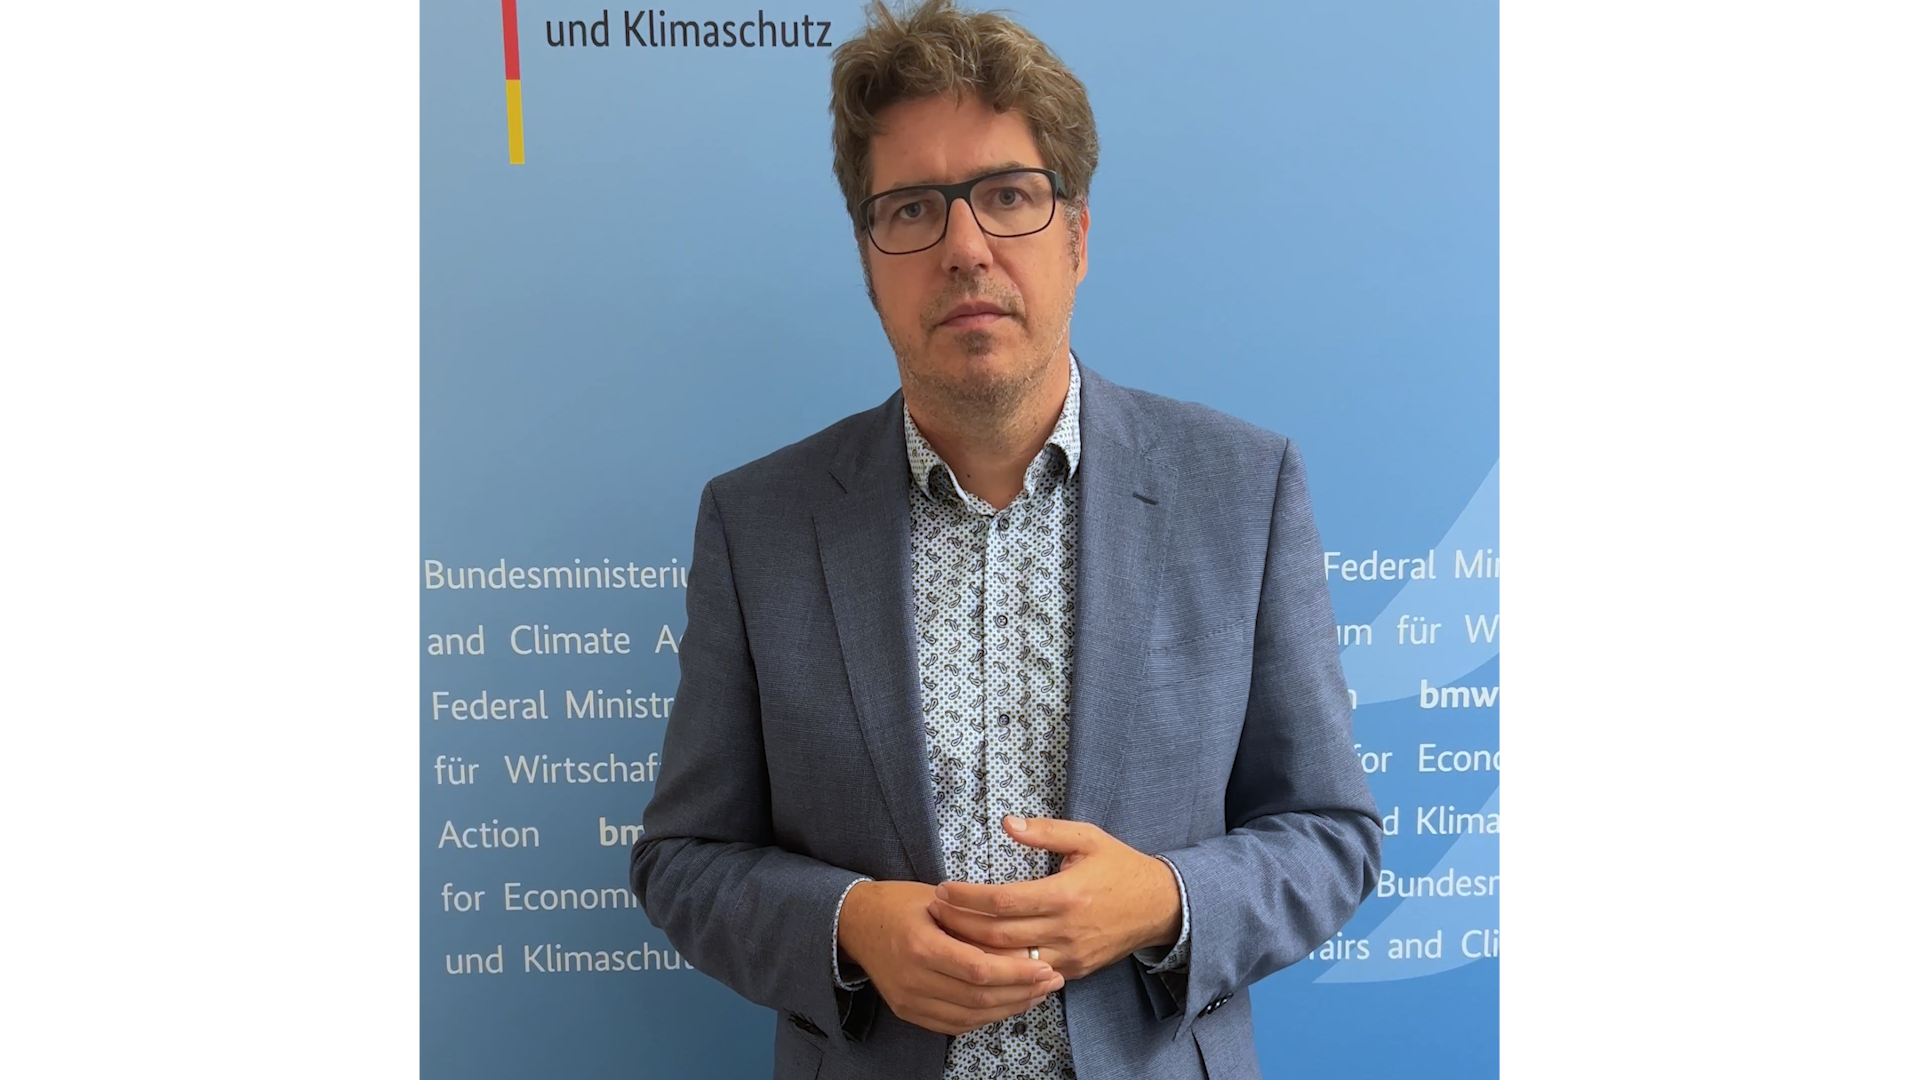 Statement von Parlamentarischen Staatssekretär Michael Kellner zu der Raffinerie Schwendt